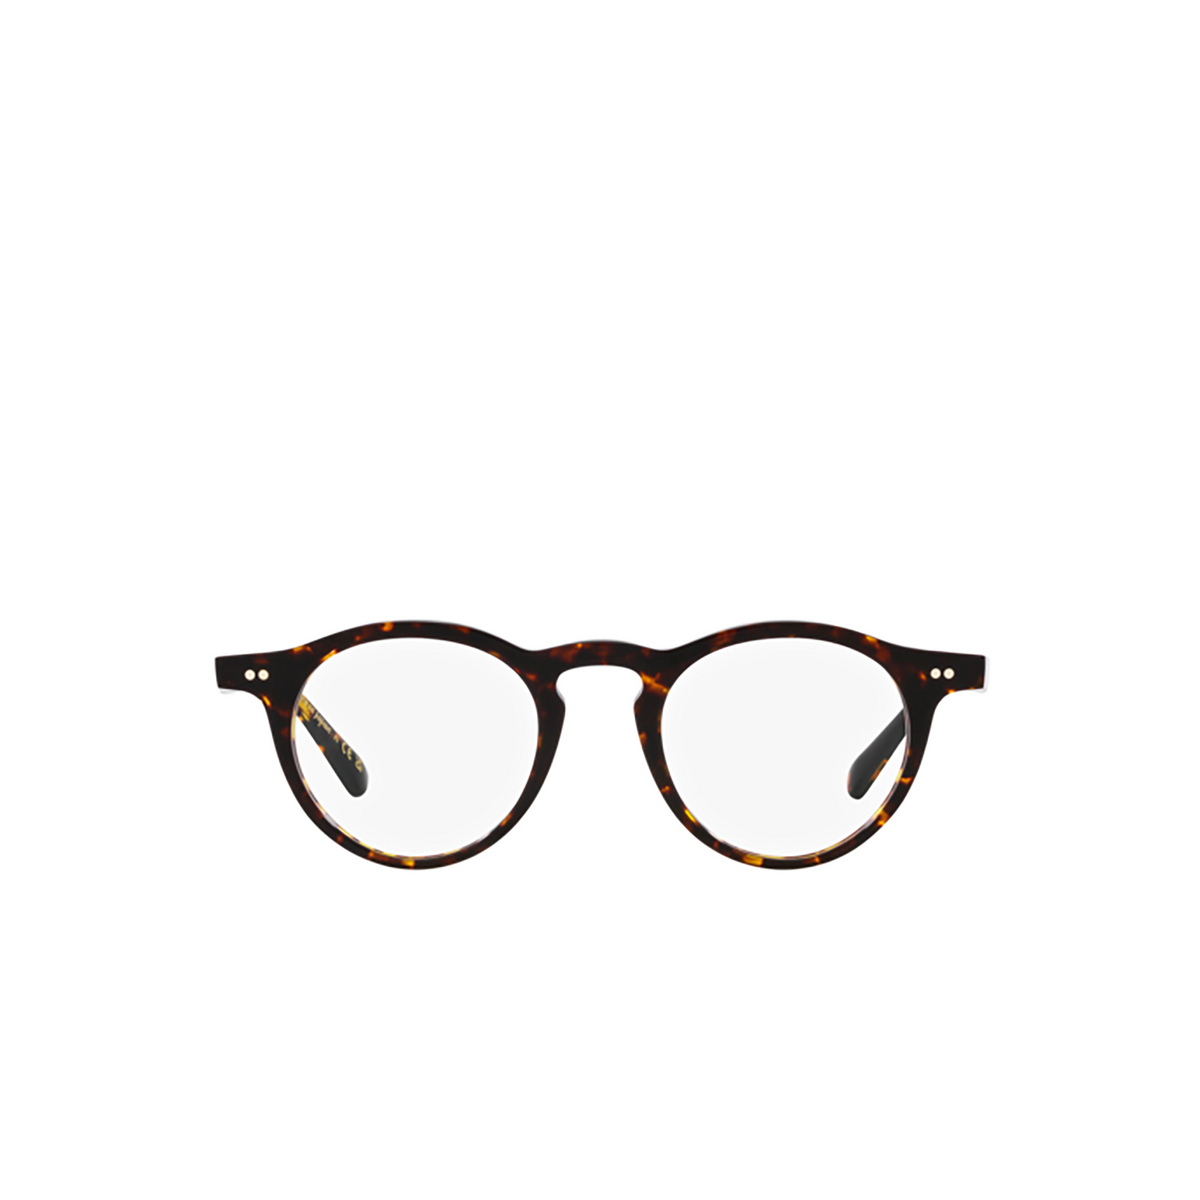 Oliver Peoples OP-13 Eyeglasses 1741 Atago Tortoise - 1/4